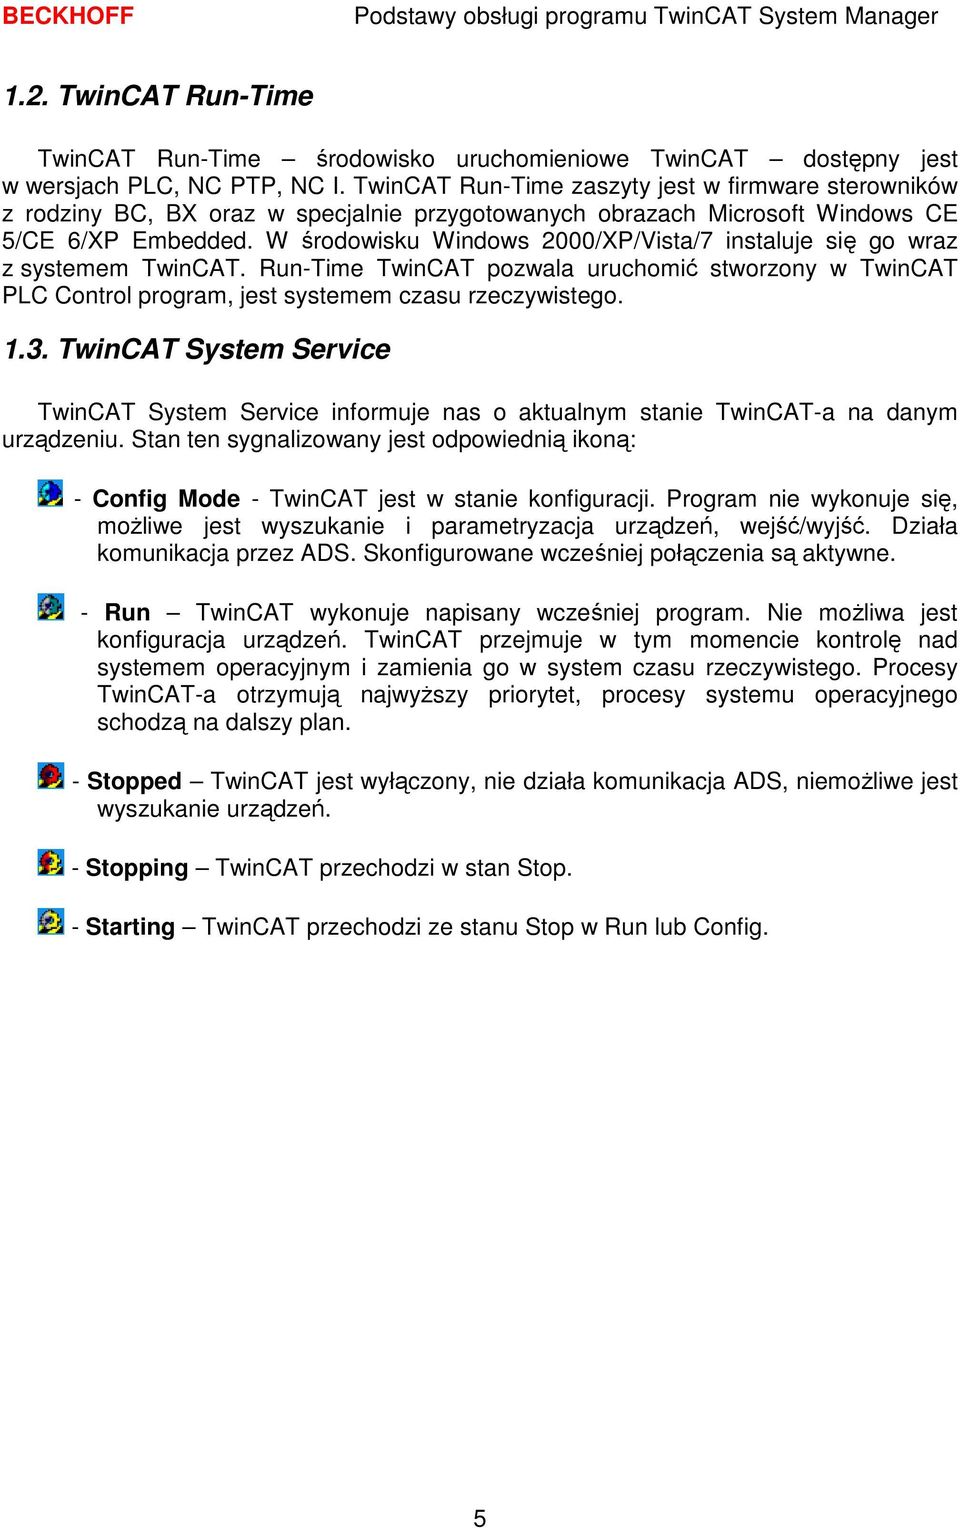 W środowisku Windows 2000/XP/Vista/7 instaluje się go wraz z systemem TwinCAT. Run-Time TwinCAT pozwala uruchomić stworzony w TwinCAT PLC Control program, jest systemem czasu rzeczywistego. 1.3.